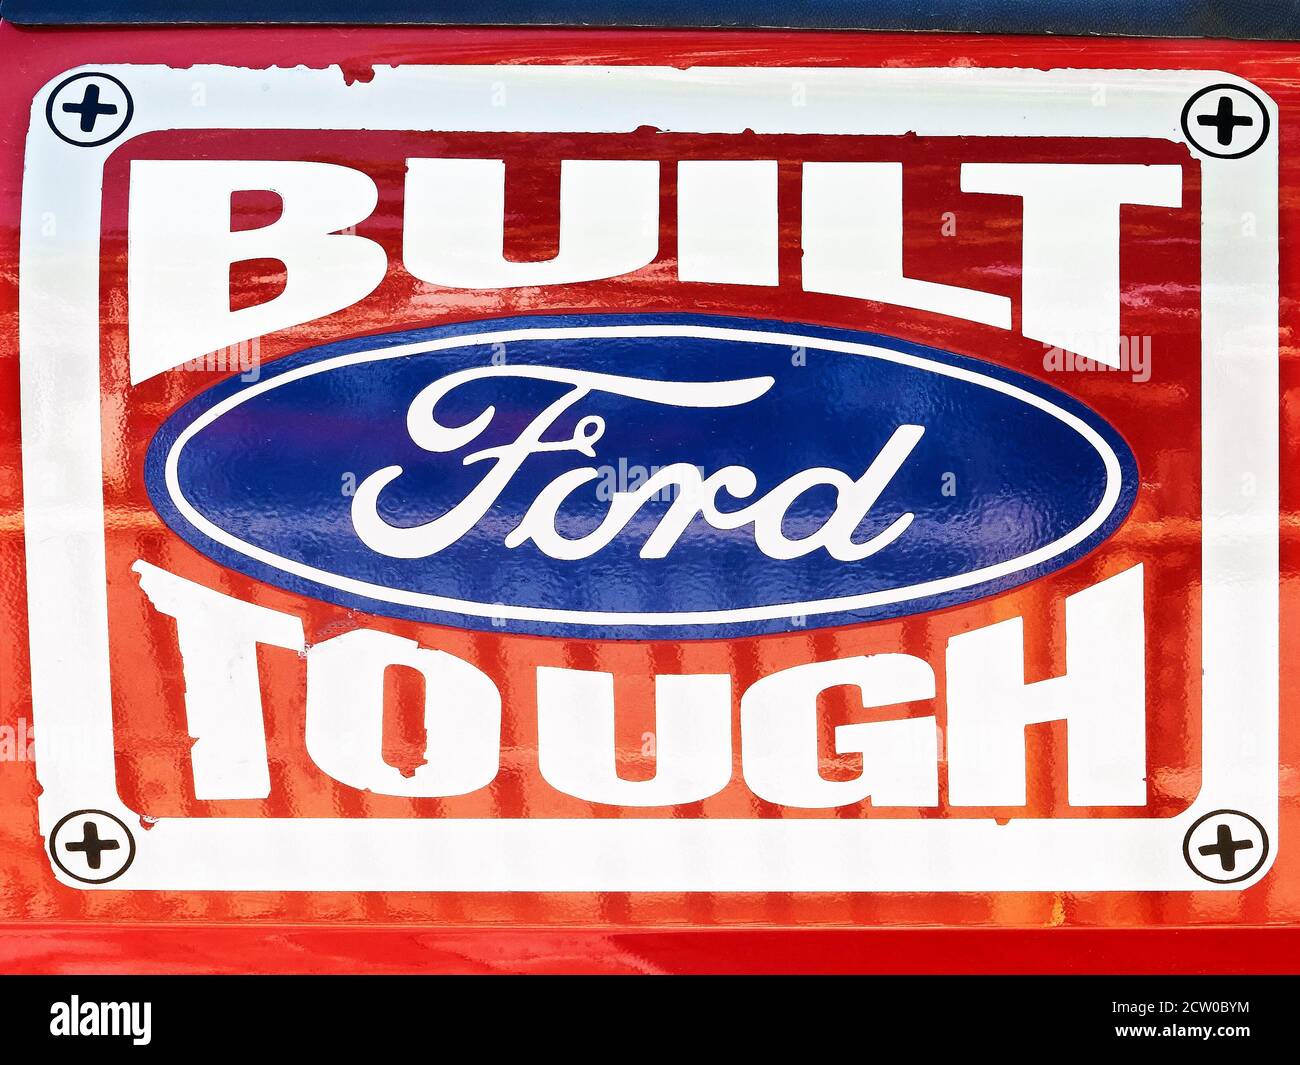 Segnaletica dipinta di un marchio Ford auto Company logo su sfondo rosso, Ford costruito duro, mostrando il supporto per la qualità dei veicoli, visto in Asia Foto Stock